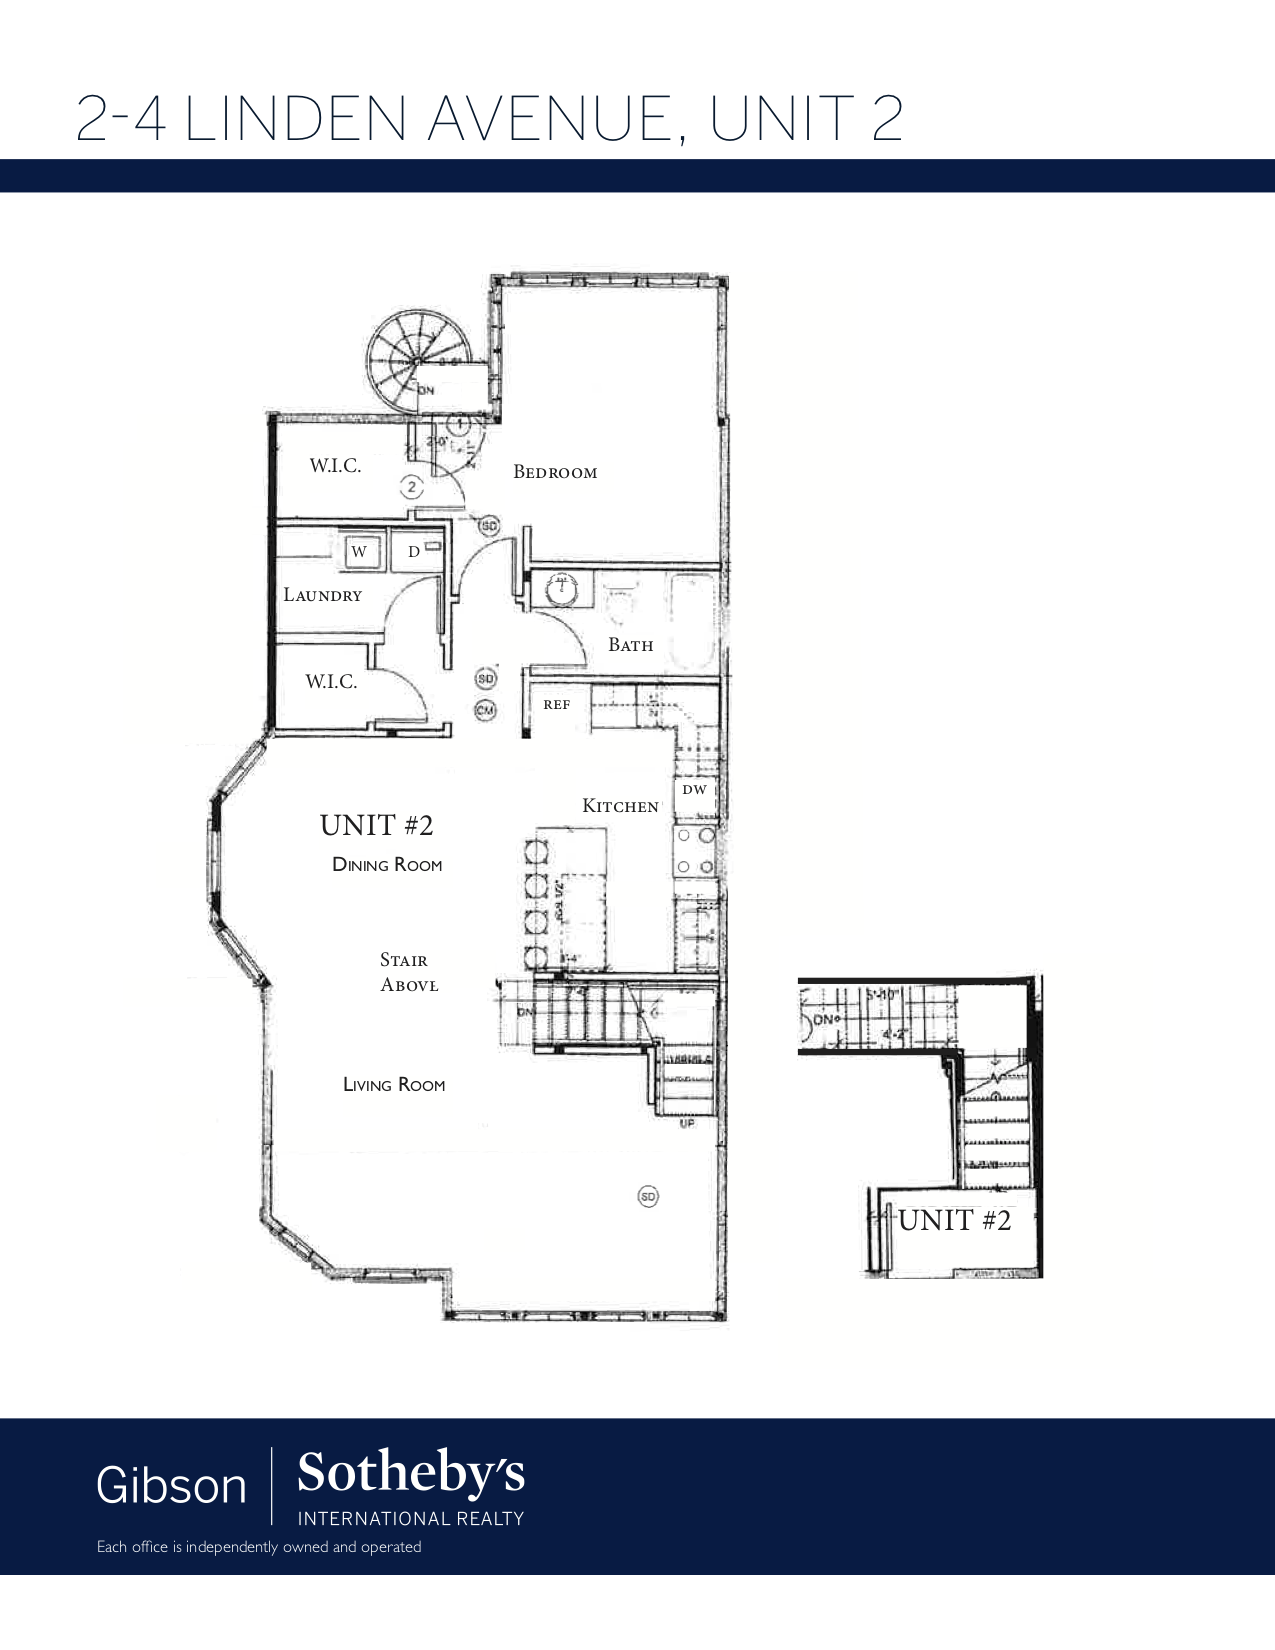 2-4 Linden Ave, Unit 2 1st floor plan